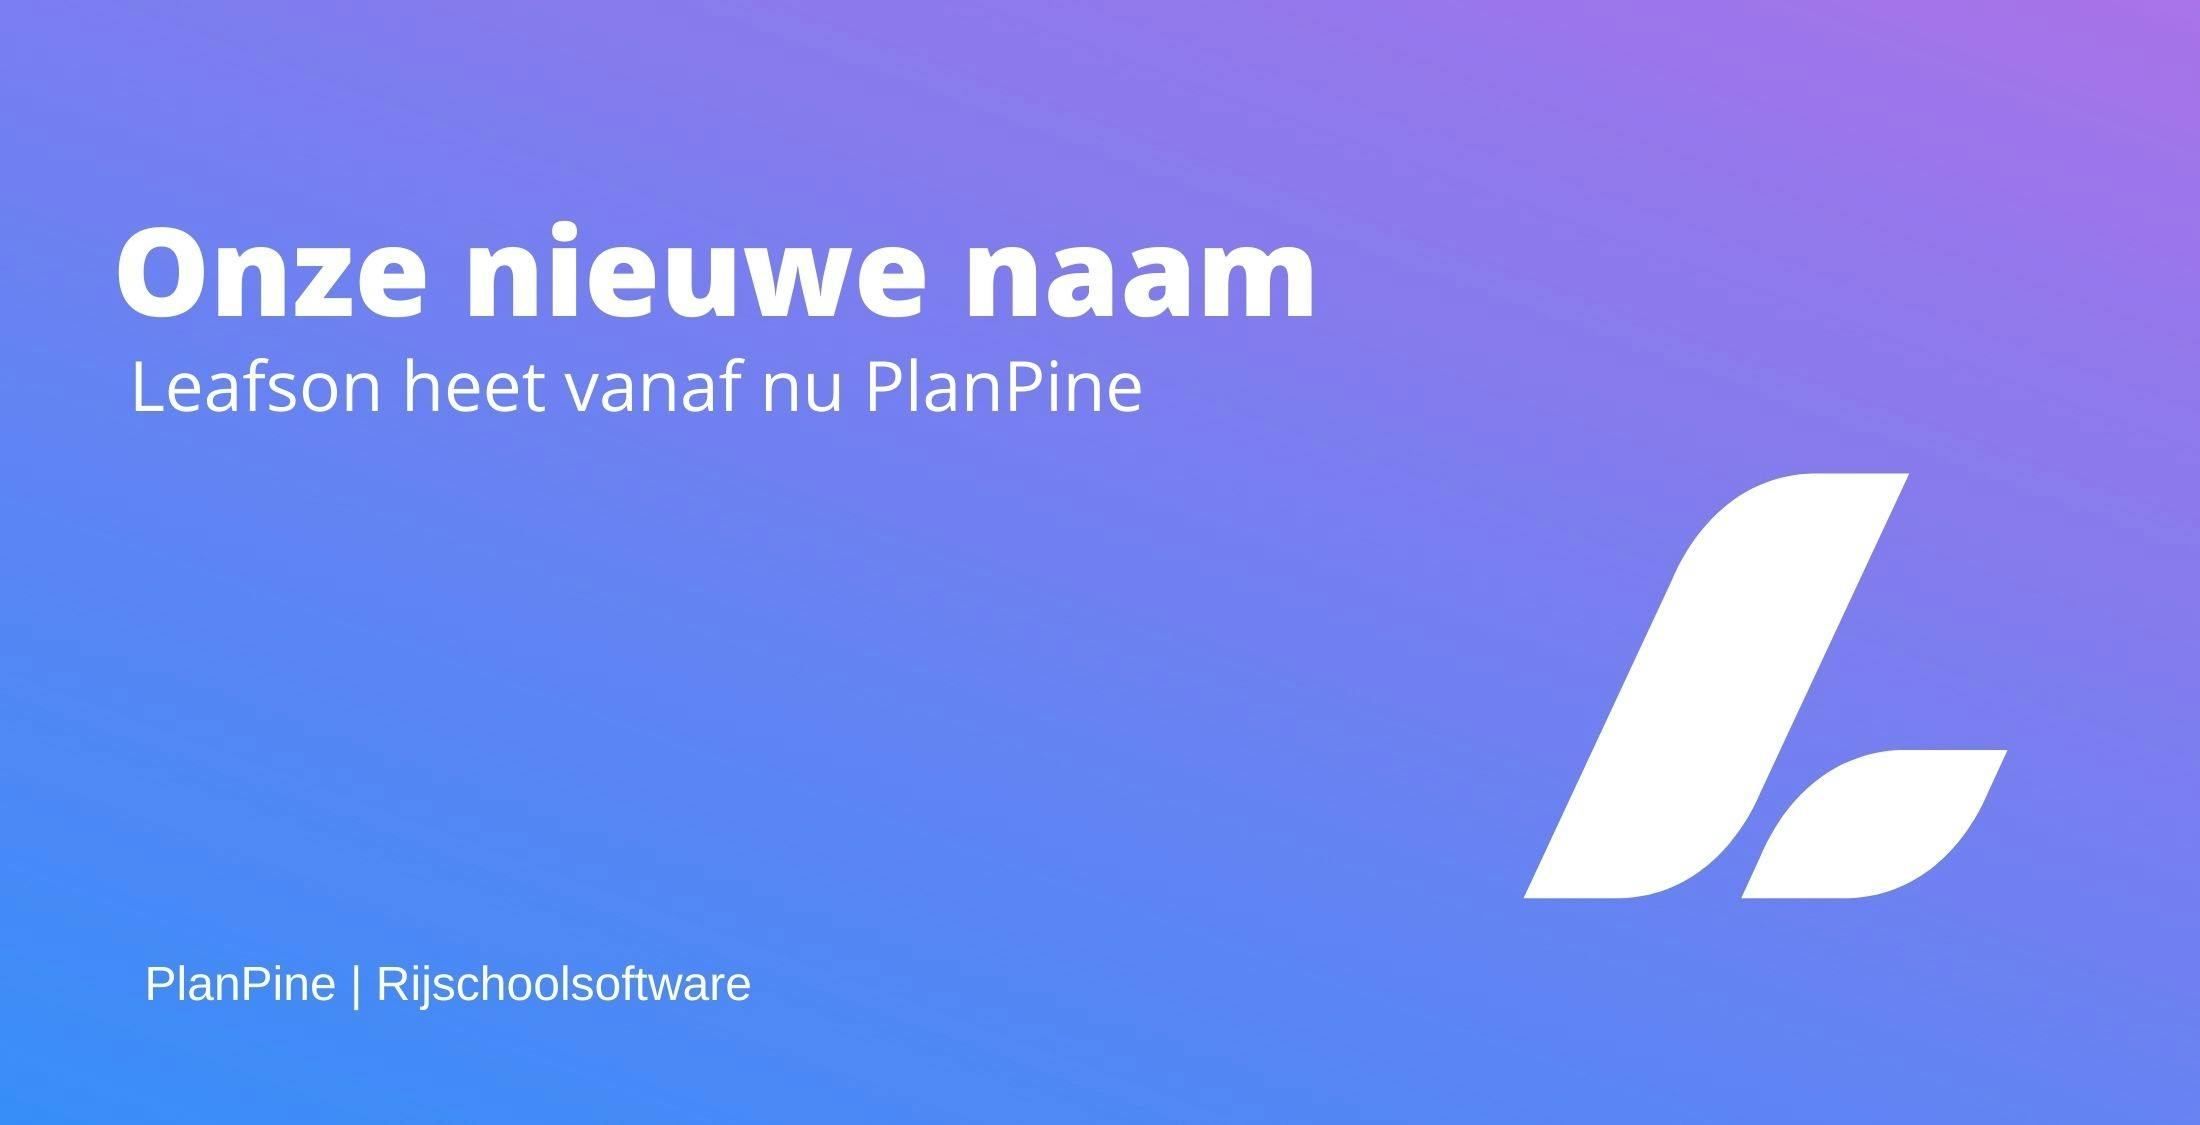 Onze nieuwe naam PlanPine